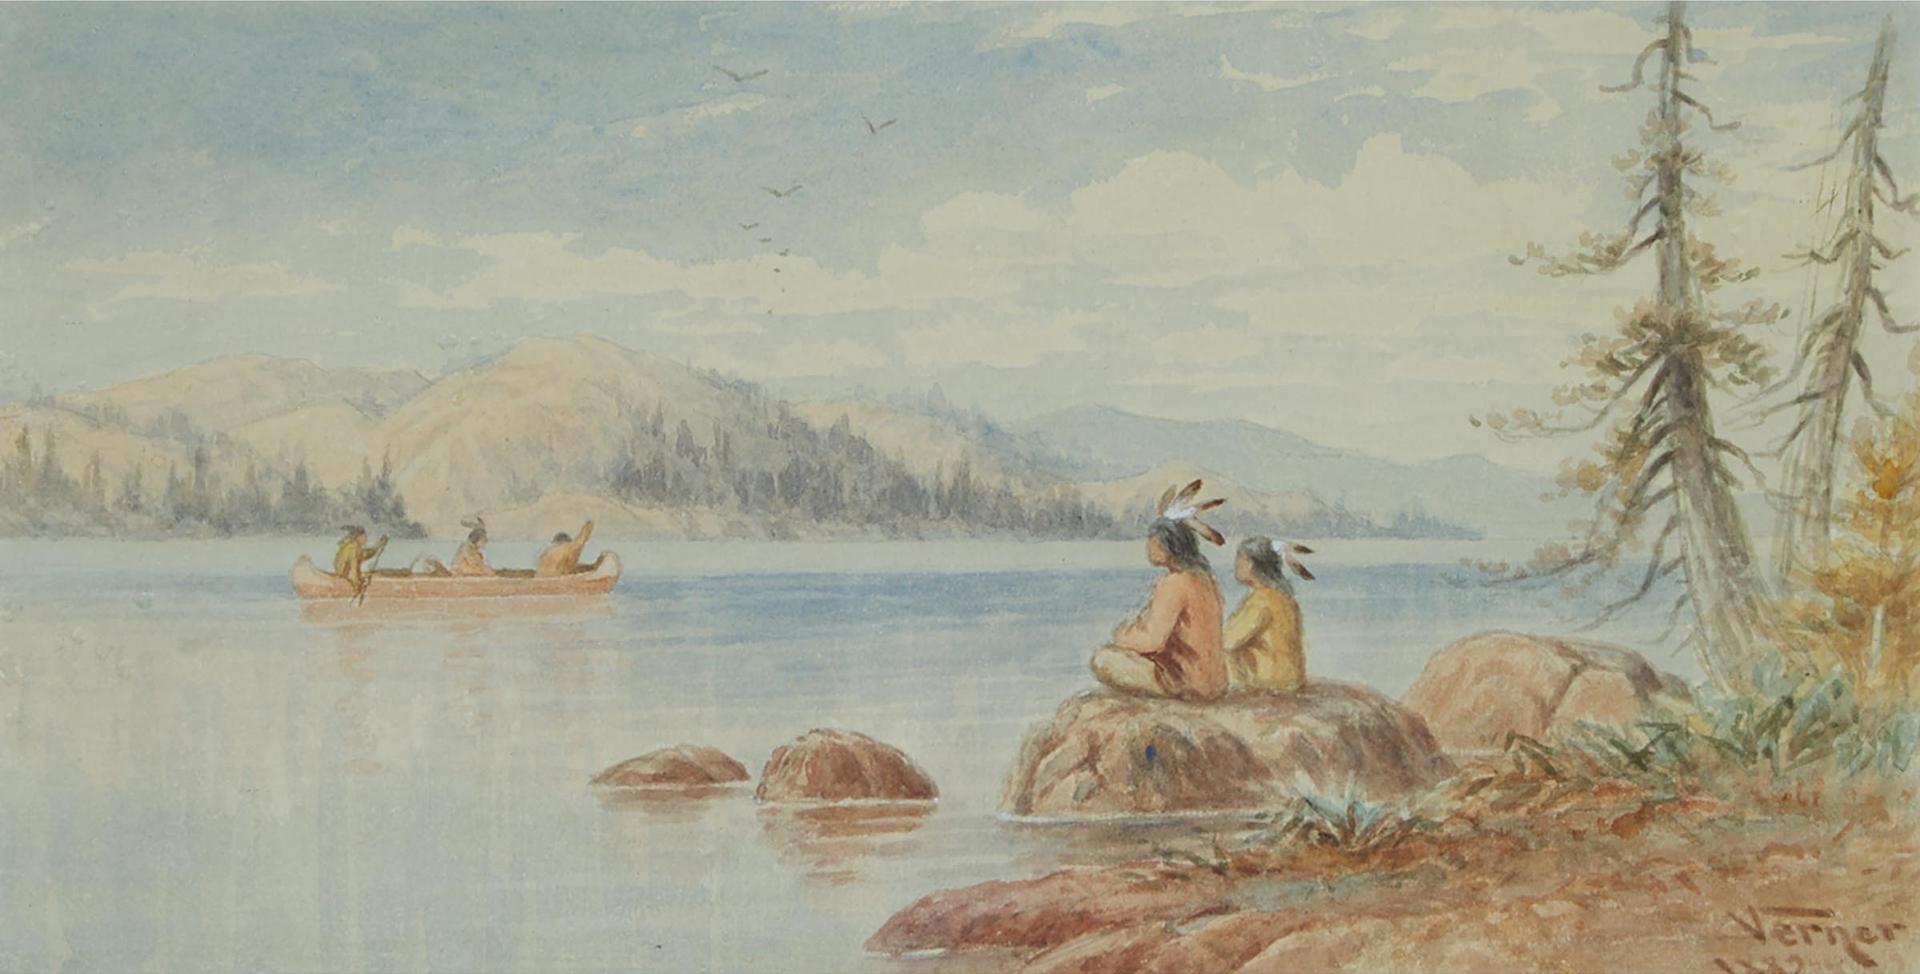 Frederick Arthur Verner (1836-1928) - Native Figures On A Shoreline, 1882